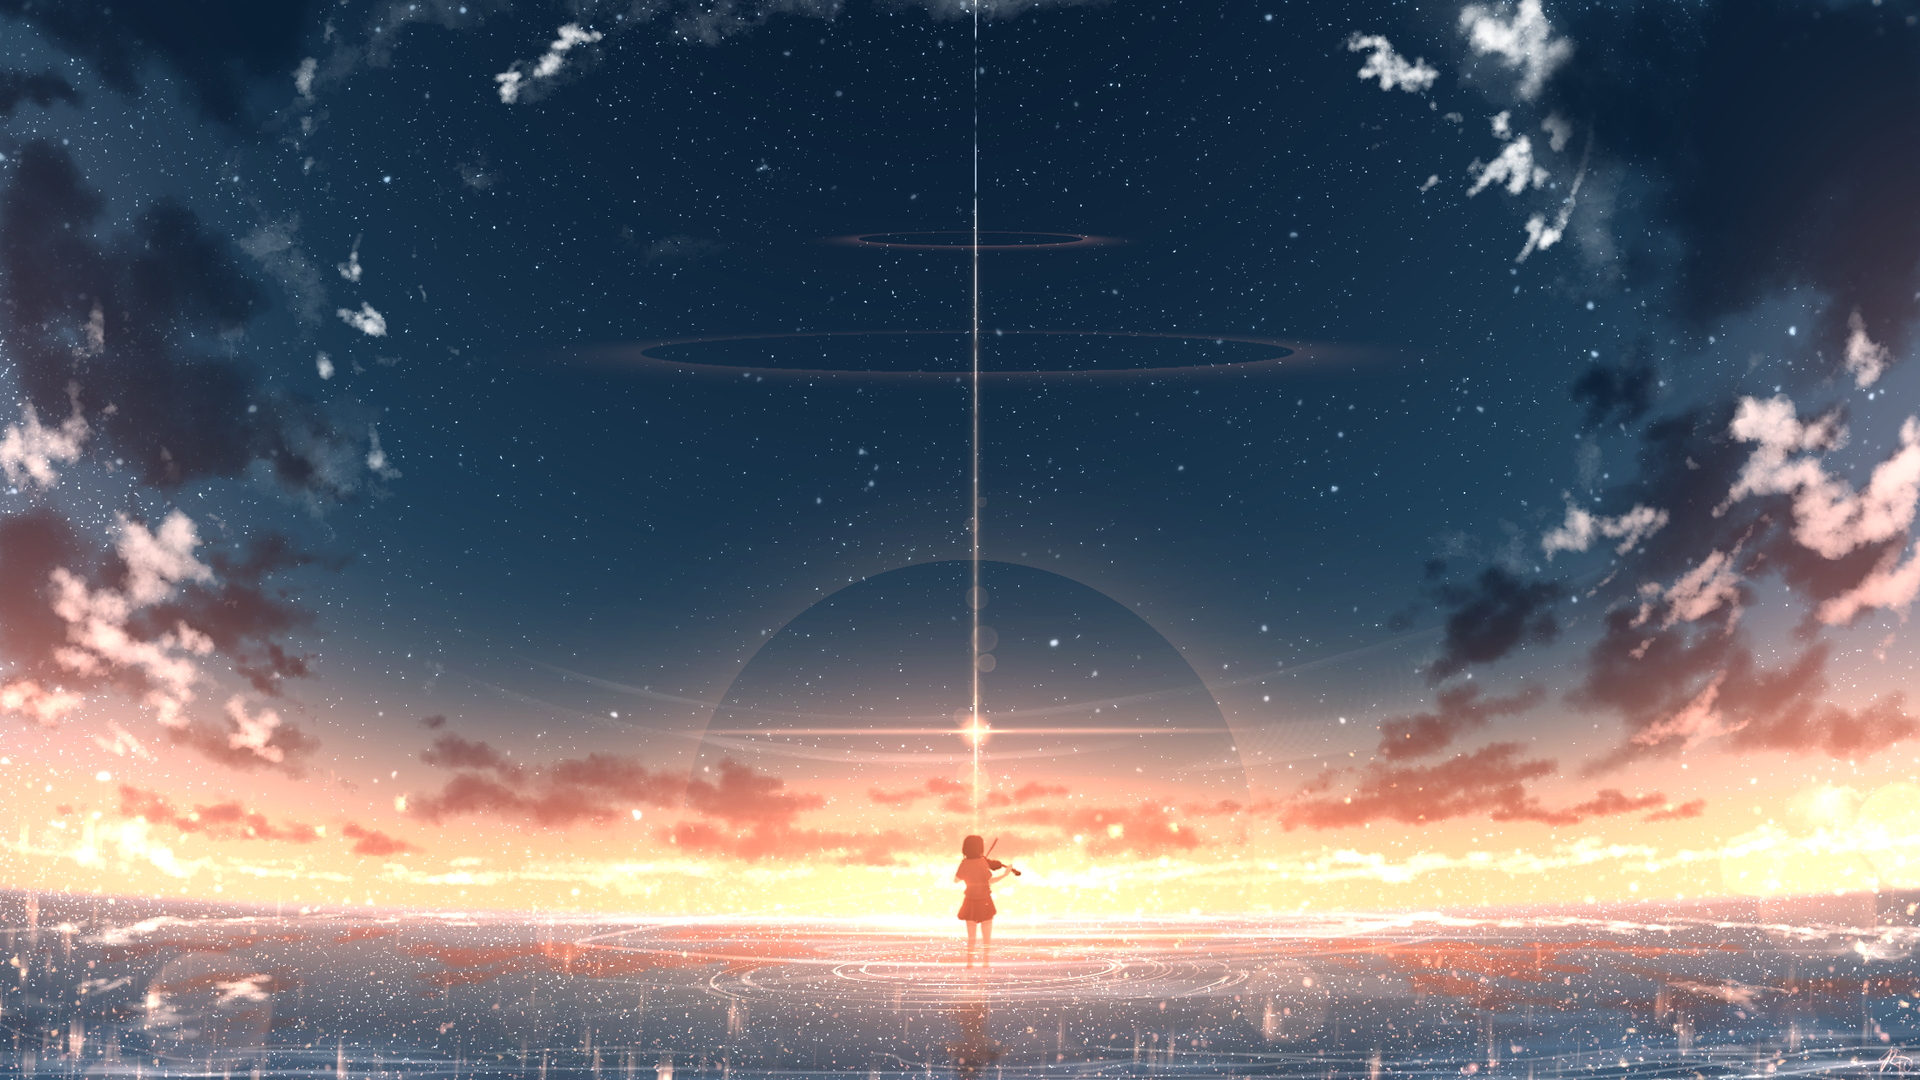 Hình nền nghệ thuật kỹ thuật số Sunset Violin Clouds Stars sẽ thu hút sự chú ý của bạn với màu sắc và chi tiết vô cùng sắc nét. Đây là một tác phẩm nghệ thuật kỹ thuật số vô cùng tuyệt đẹp, với màn lặn của mặt trời, âm nhạc đàn violin, và các đám mây và ngôi sao, chắc chắn sẽ đem lại cho bạn cảm giác thư giãn và tĩnh lặng khi ngắm nhìn.